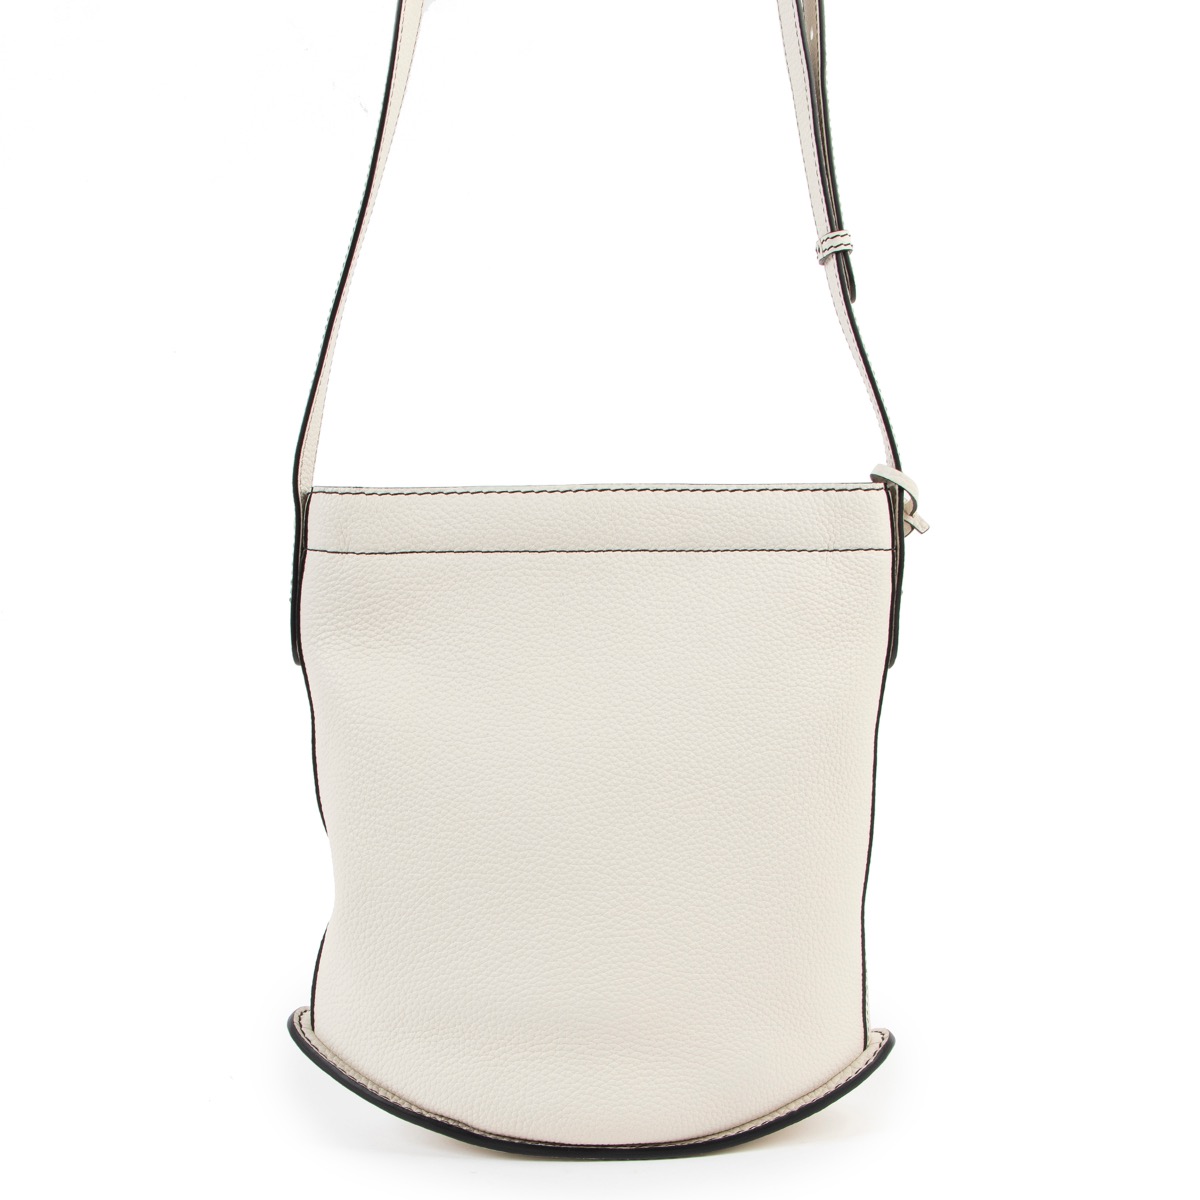 Delvaux Taurillon Soft Pin Daily Surpiqué MM - Neutrals Bucket Bags,  Handbags - DVX22670